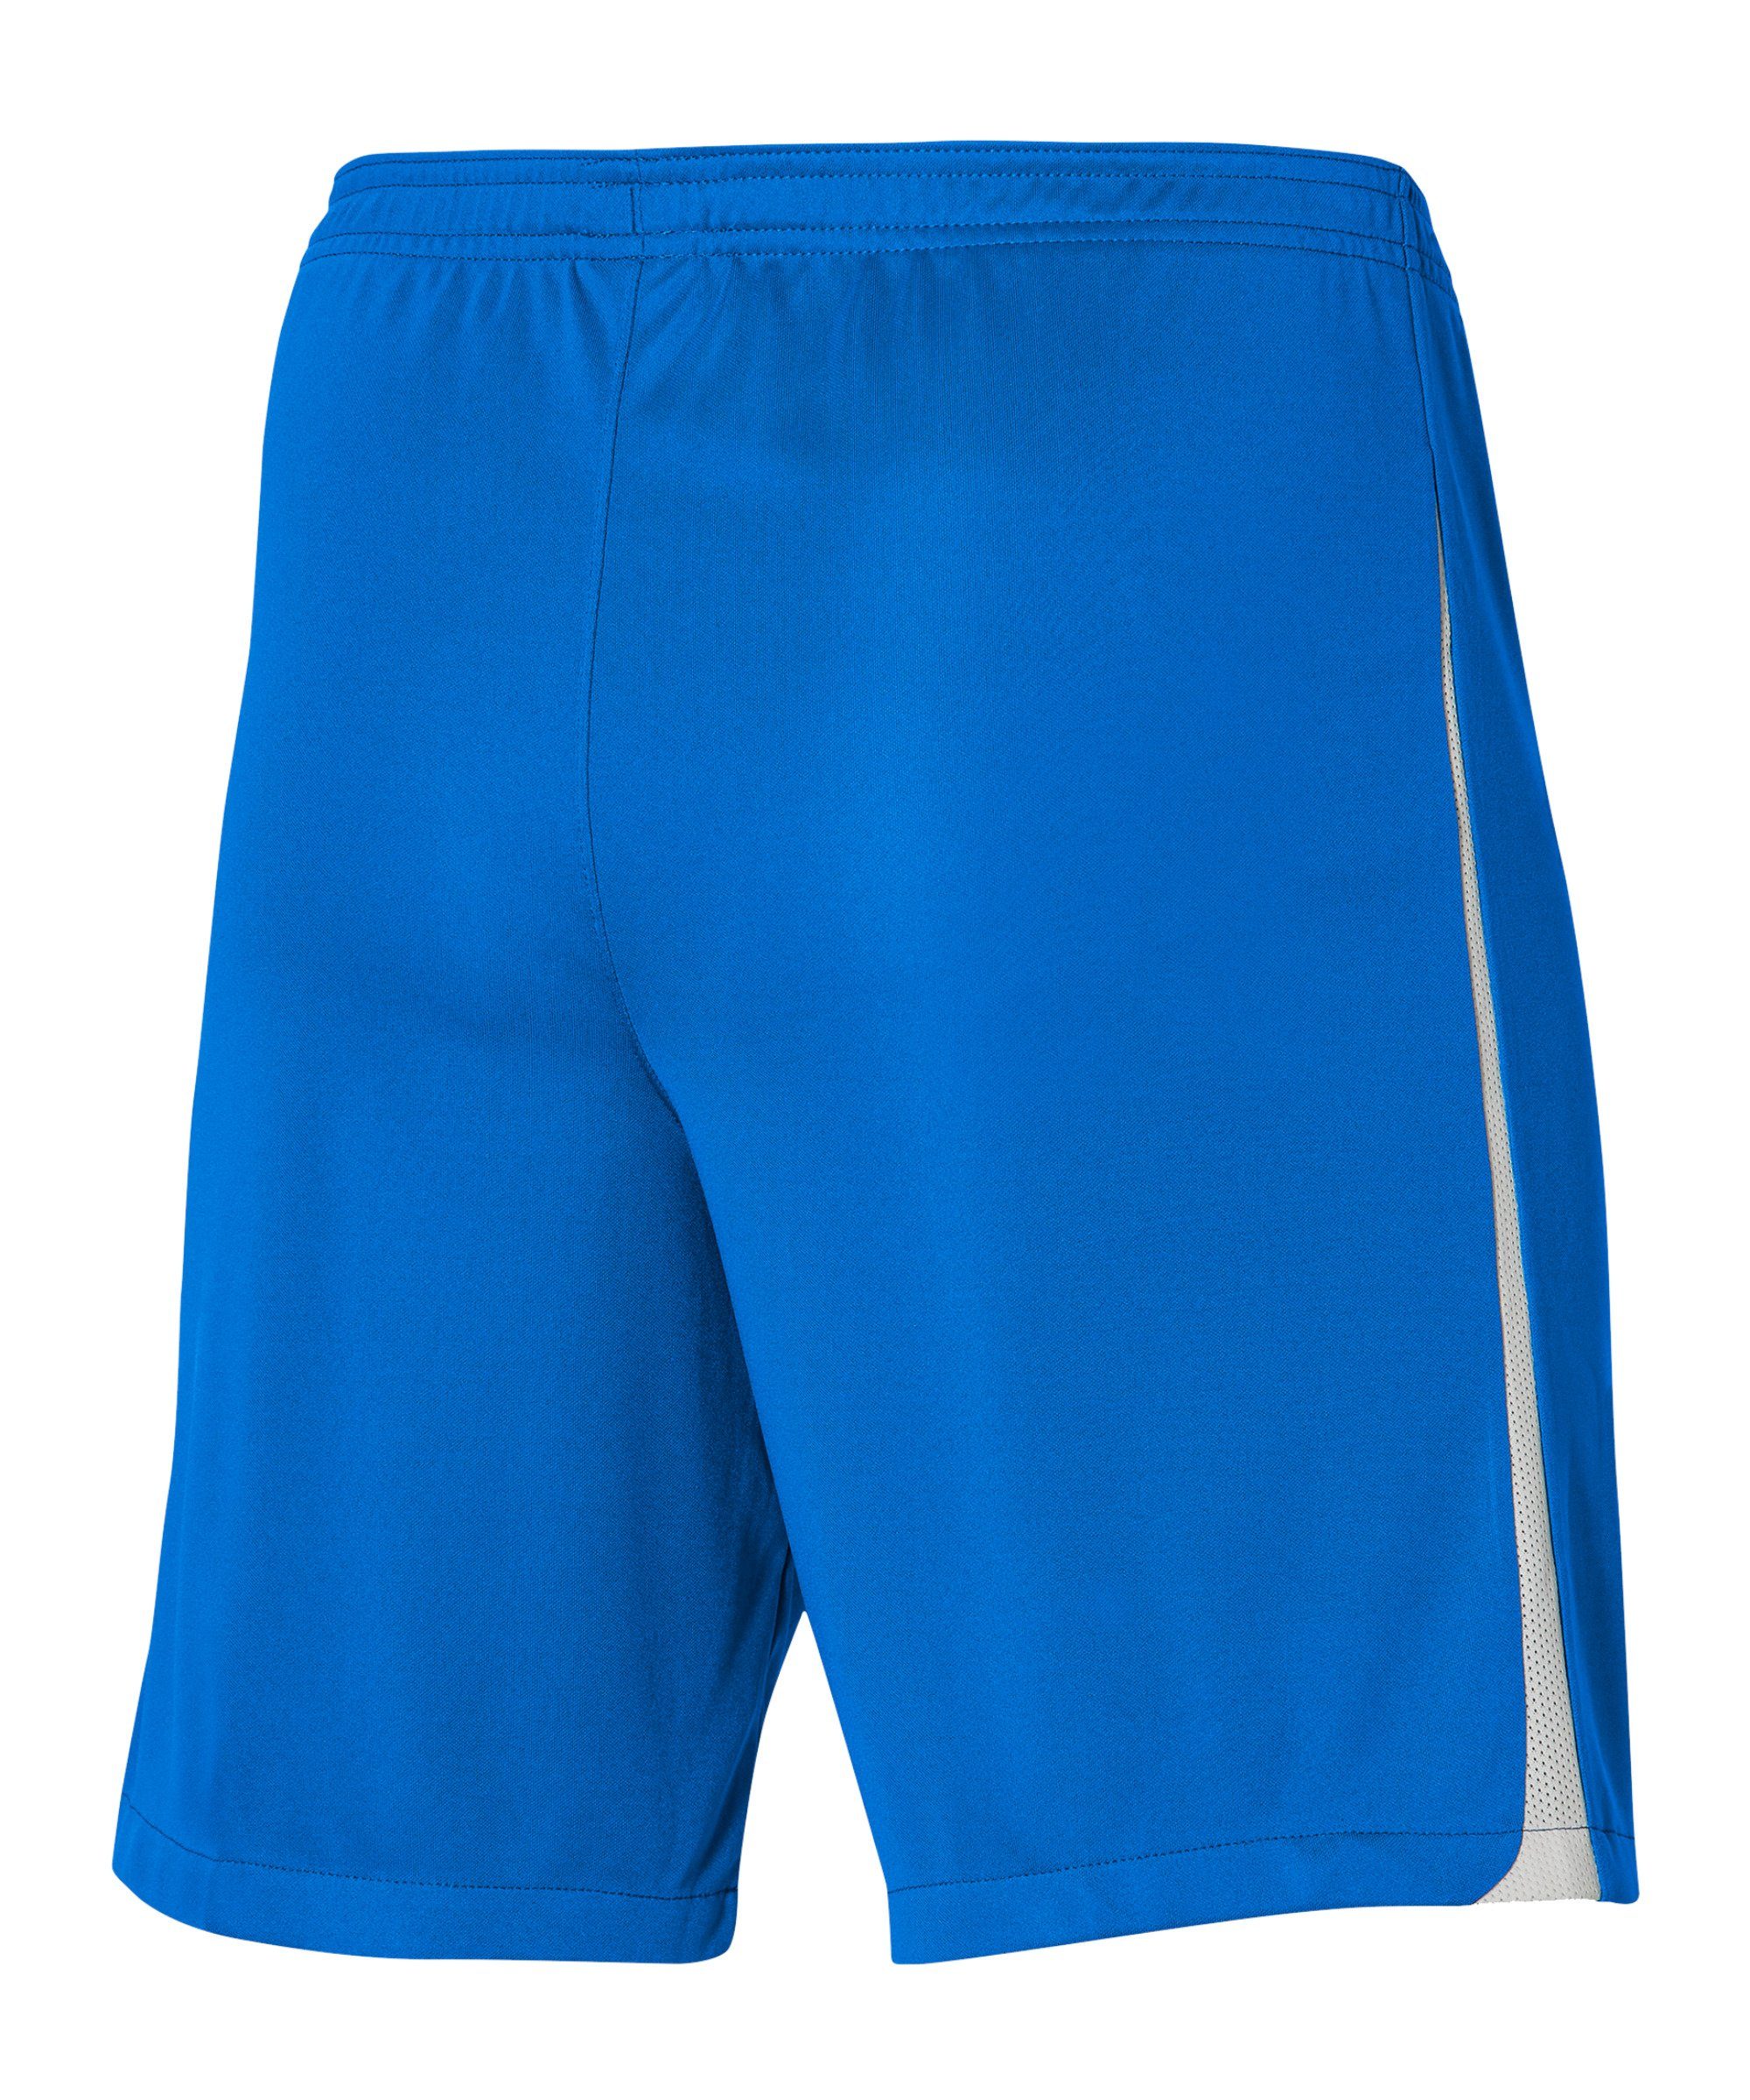 Kids III League Nike Short Sporthose dunkelblauweissweiss